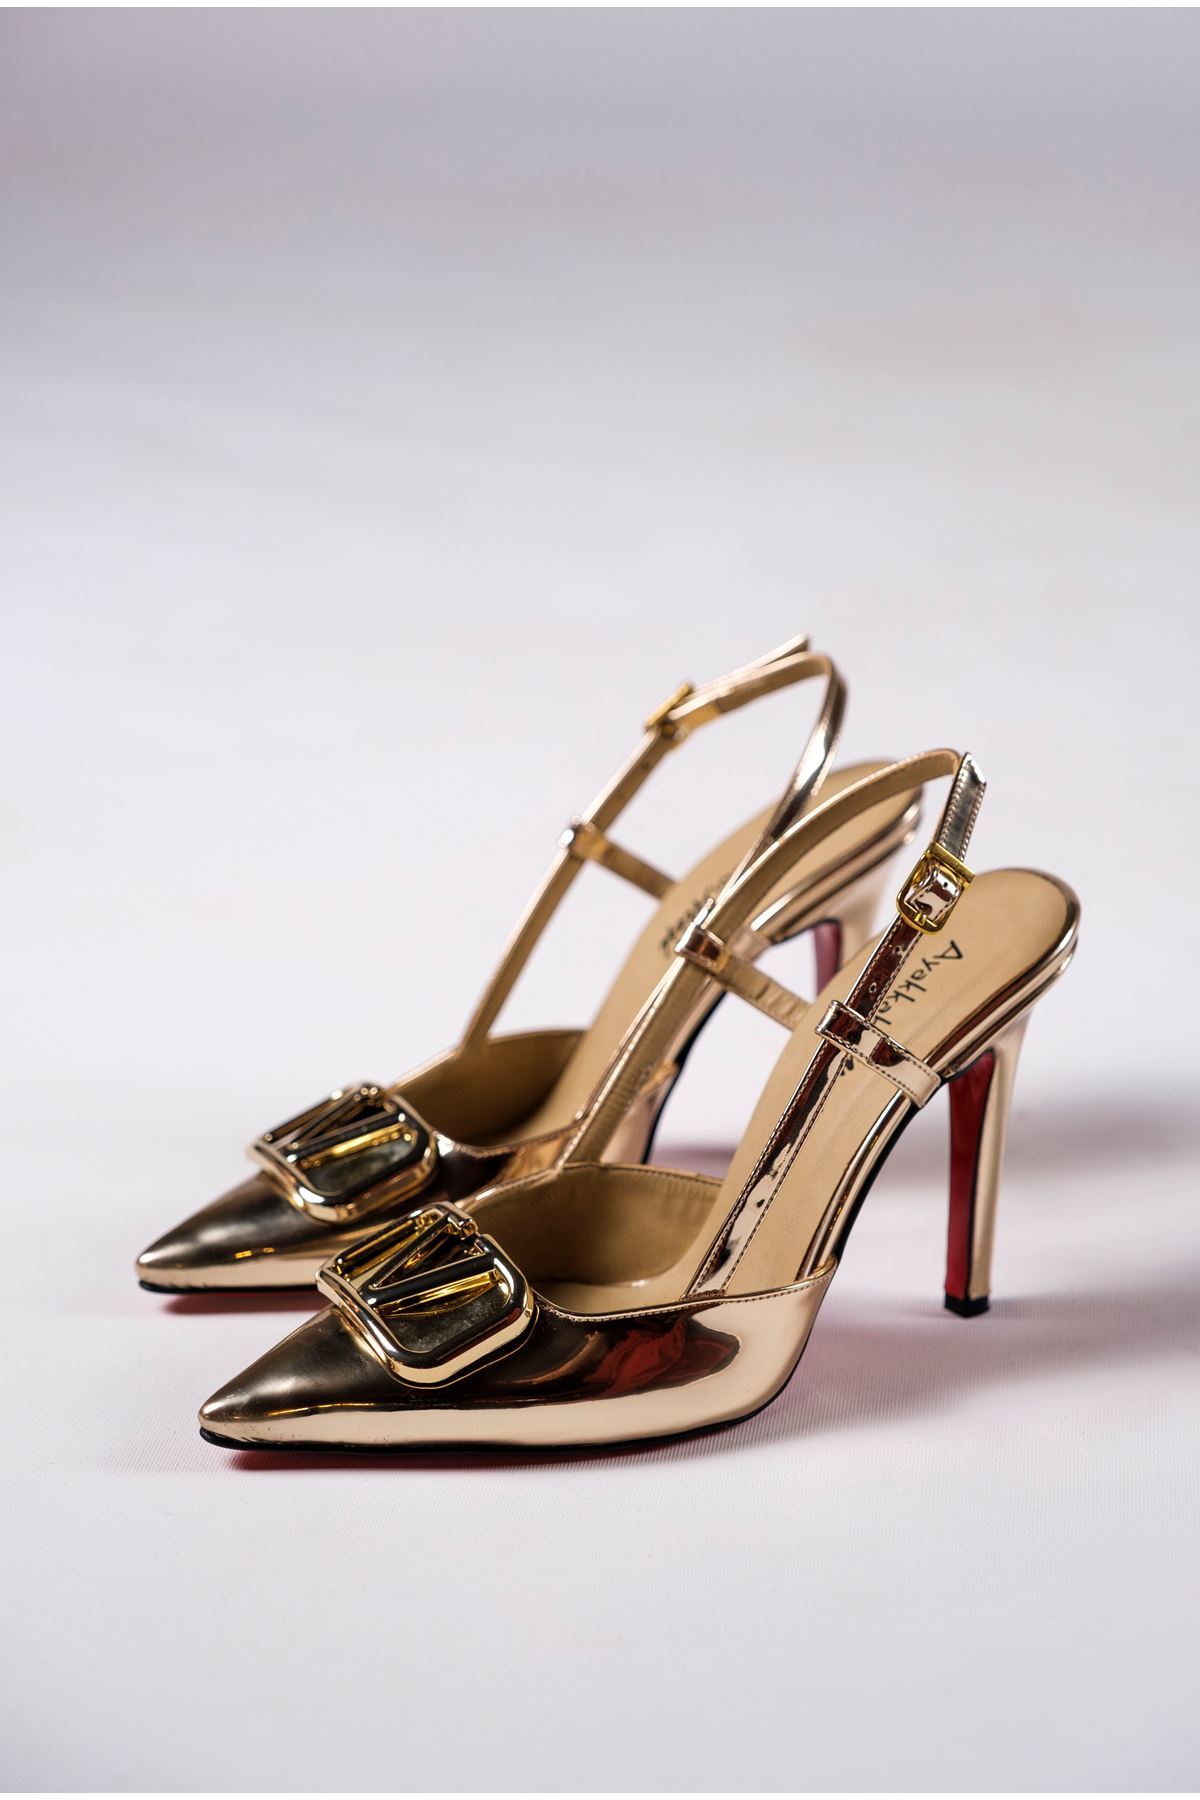 Light Altın Ayna Tokalı Kadın Topuklu Özel Tasarım Ayakkabı Stiletto Kajino